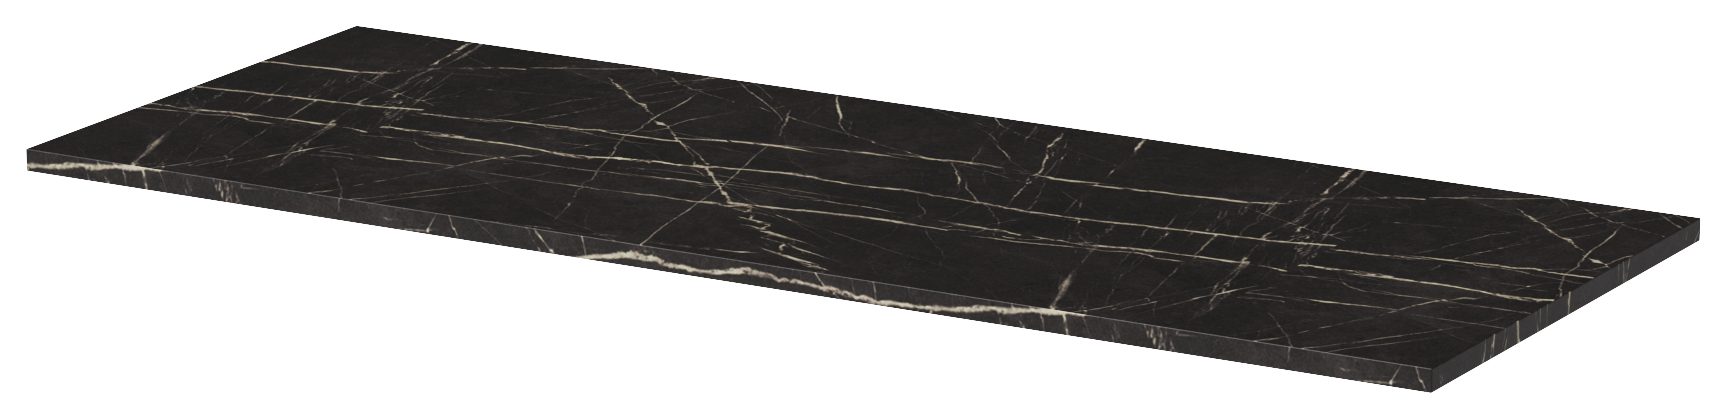 Wickes Tallinn Black Marble Worktop - 465 x 1310 x 18mm